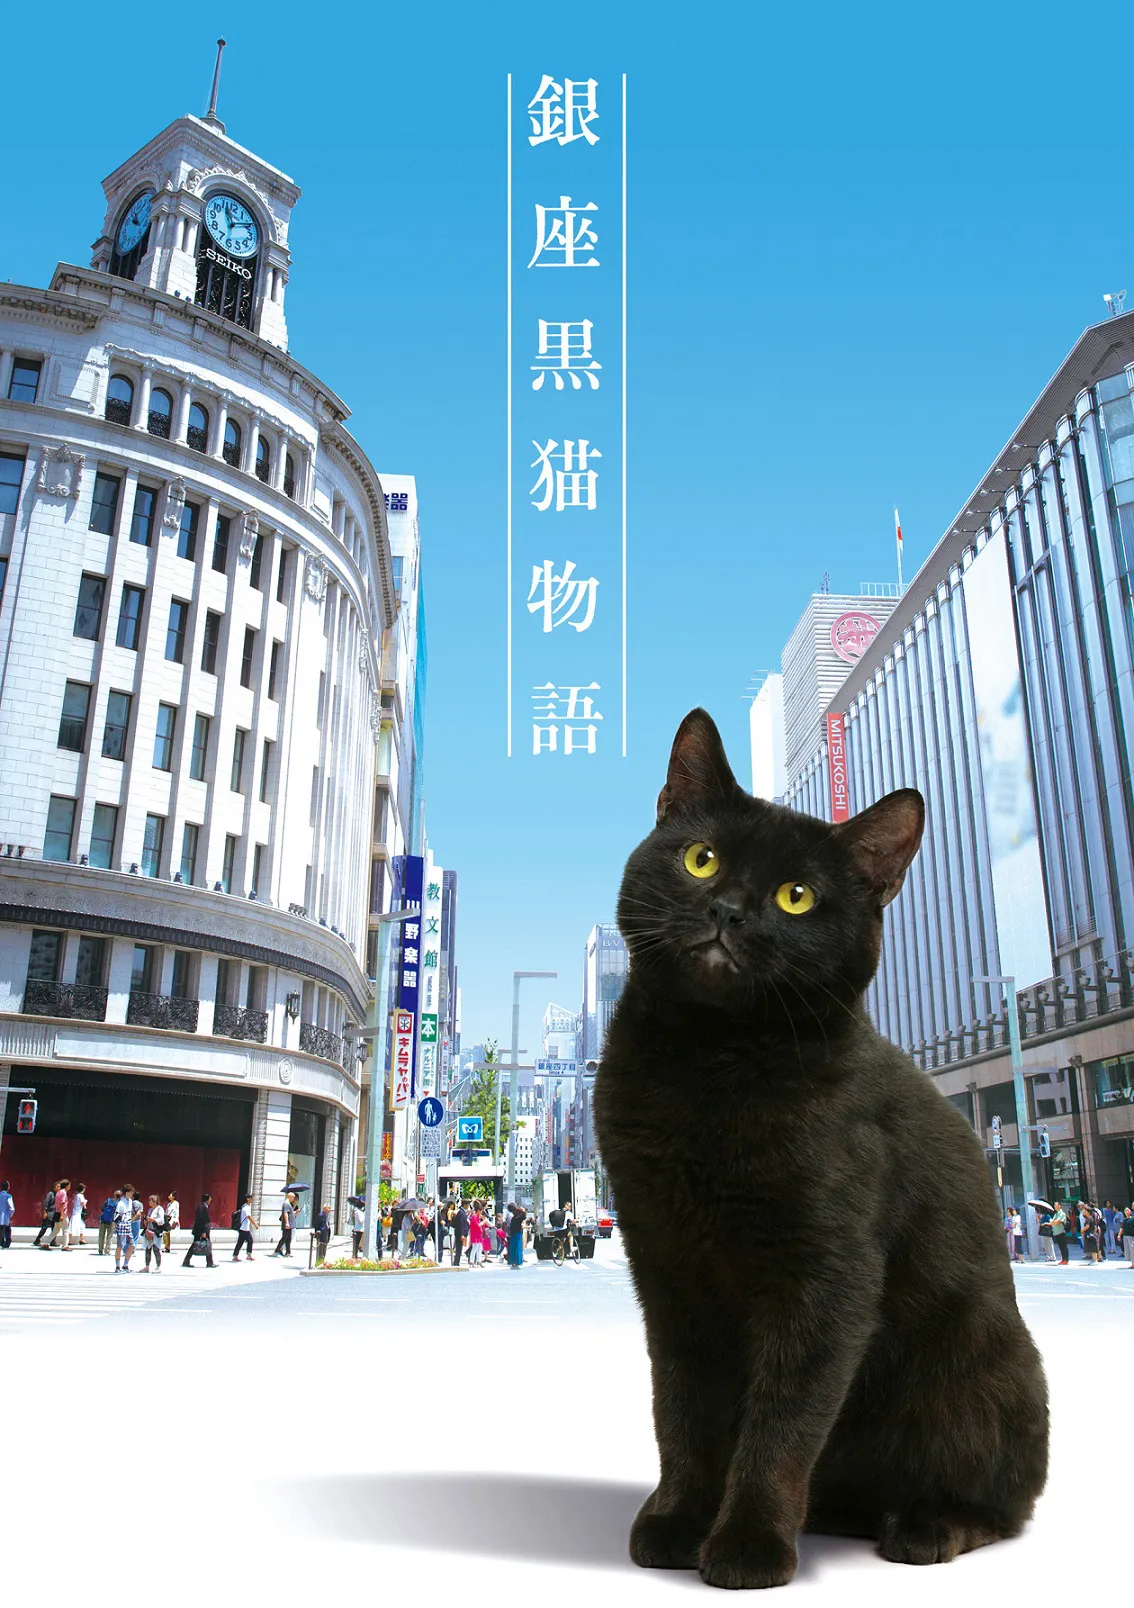 山寺宏一が黒猫の声を担当する「銀座黒猫物語」